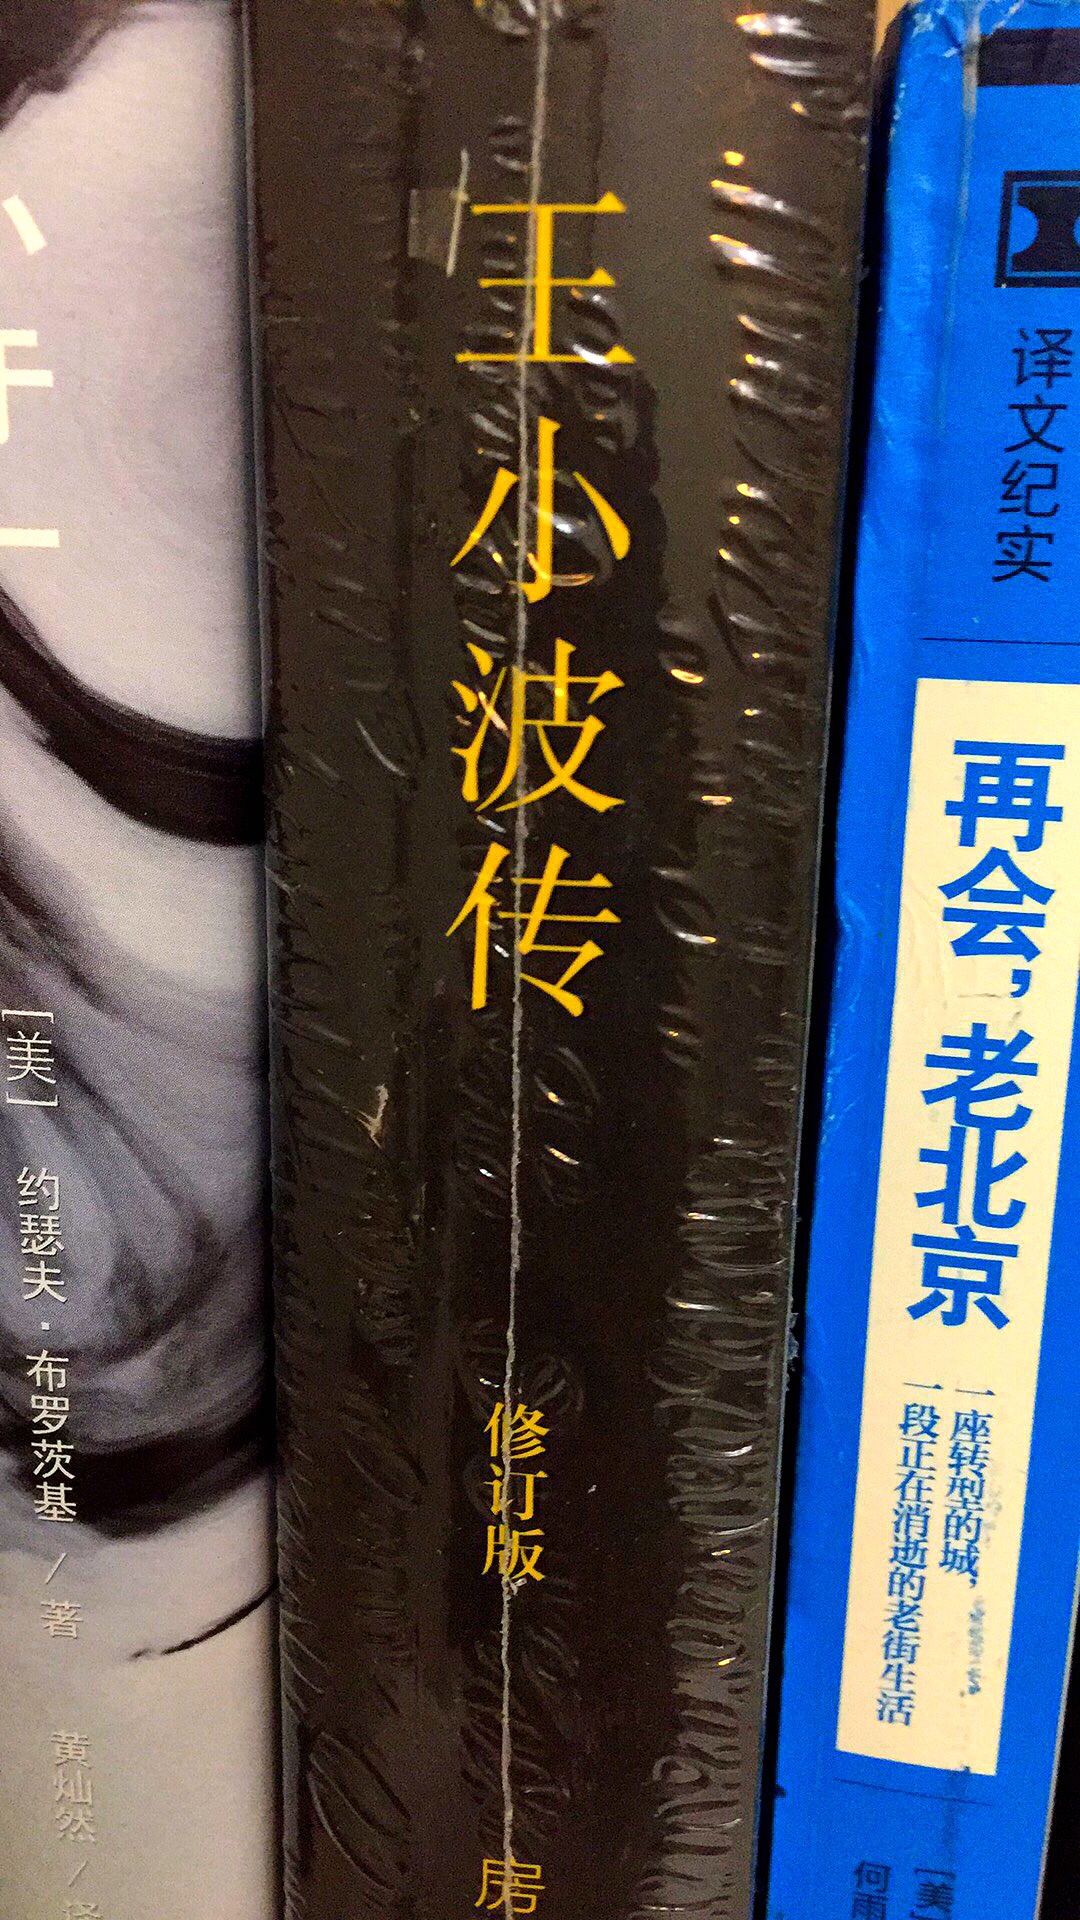 在北京三联书店关注的一本书，等待着的活动买入，还算划算，有关王小波先生的书，想读的。